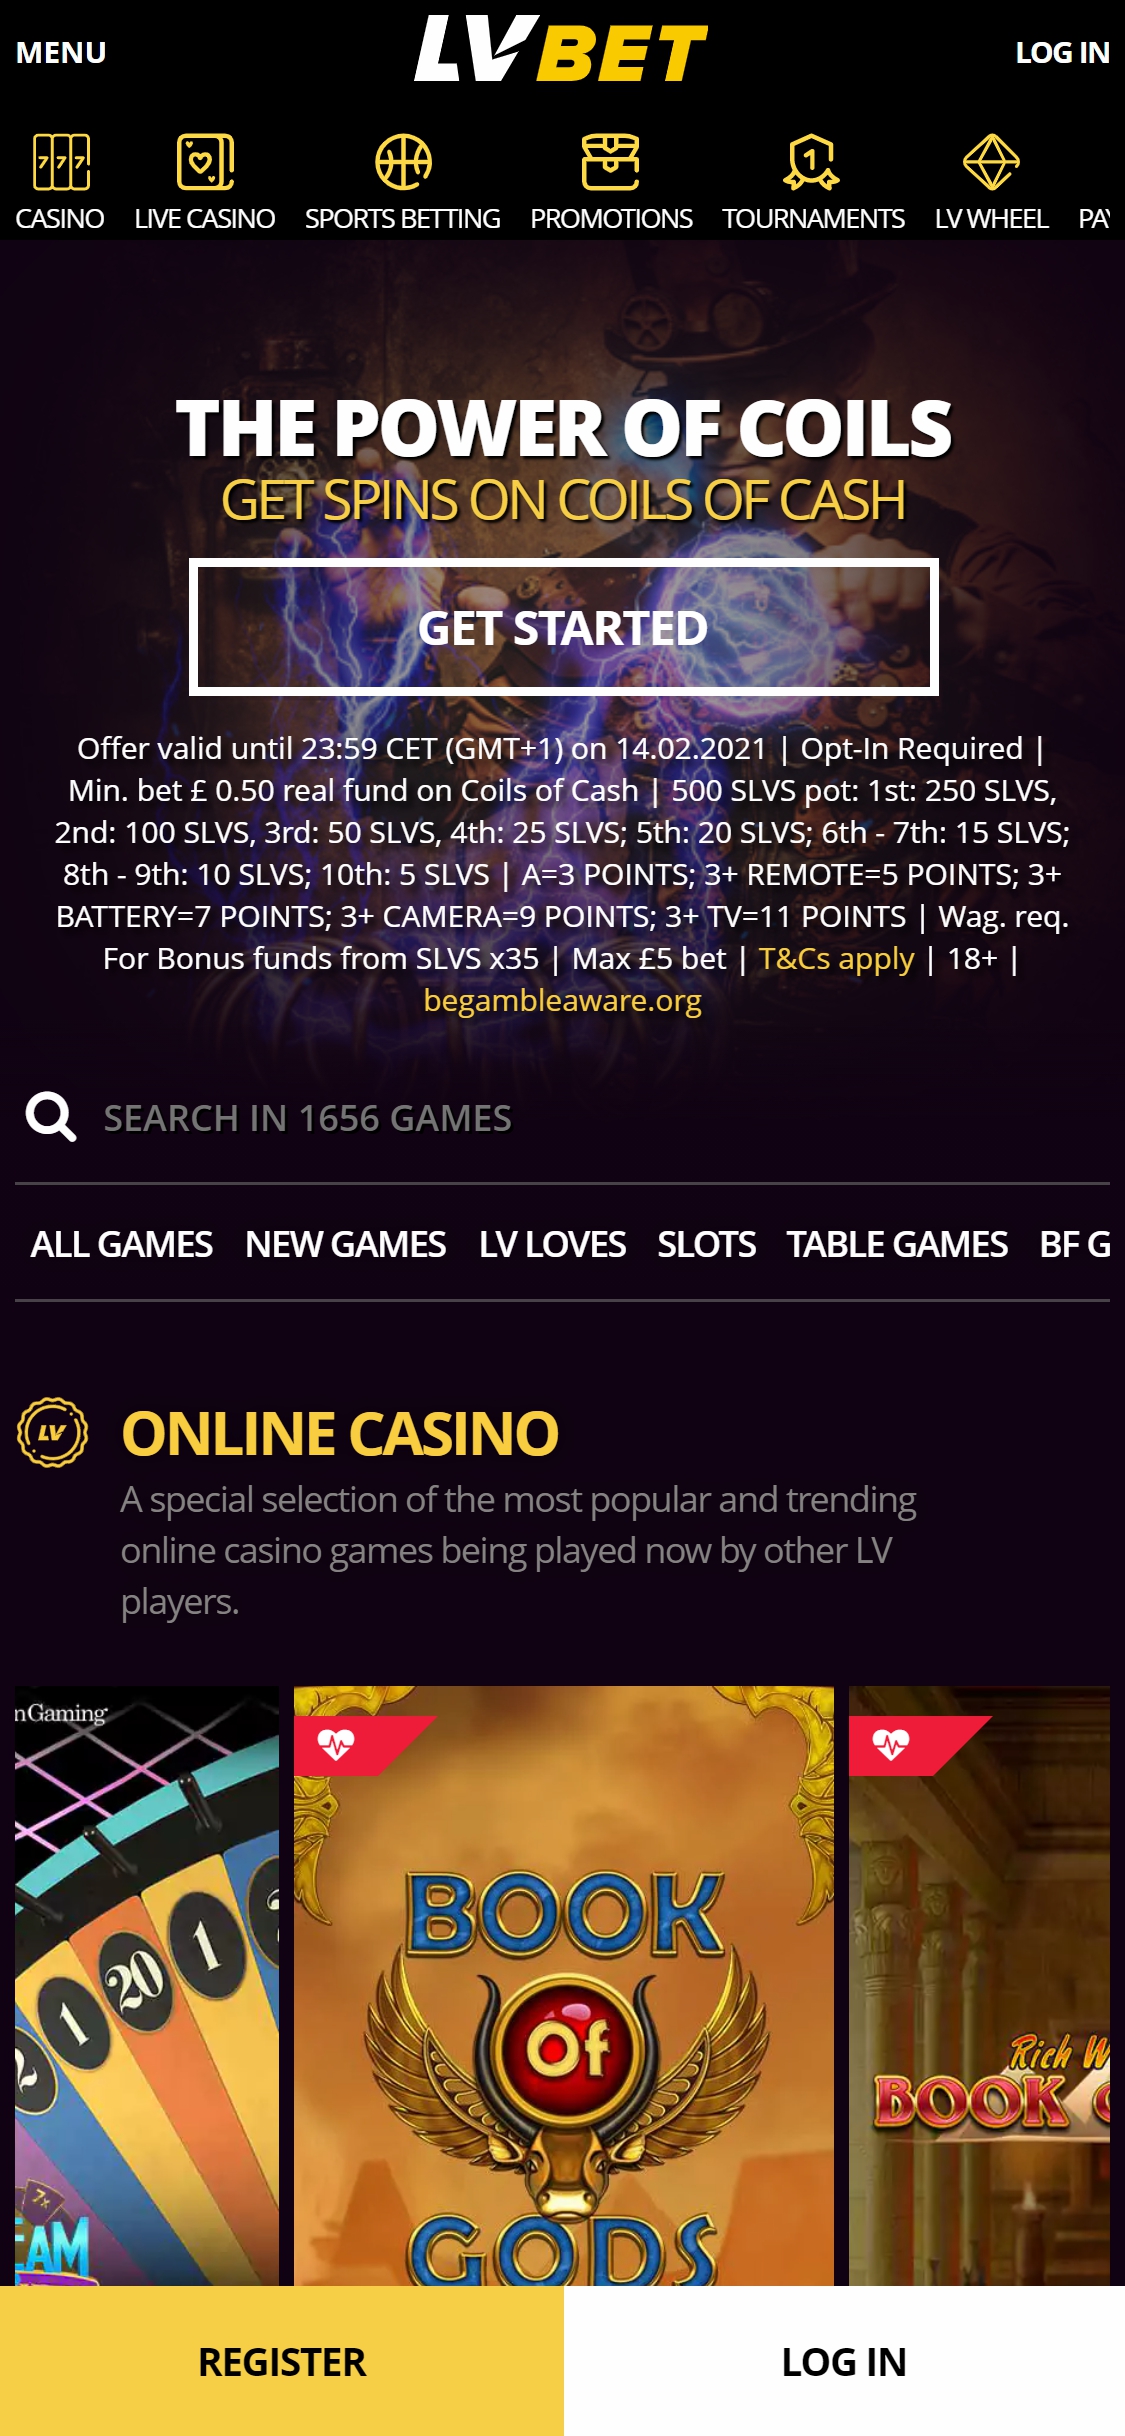 LV BET Casino Mobile Review